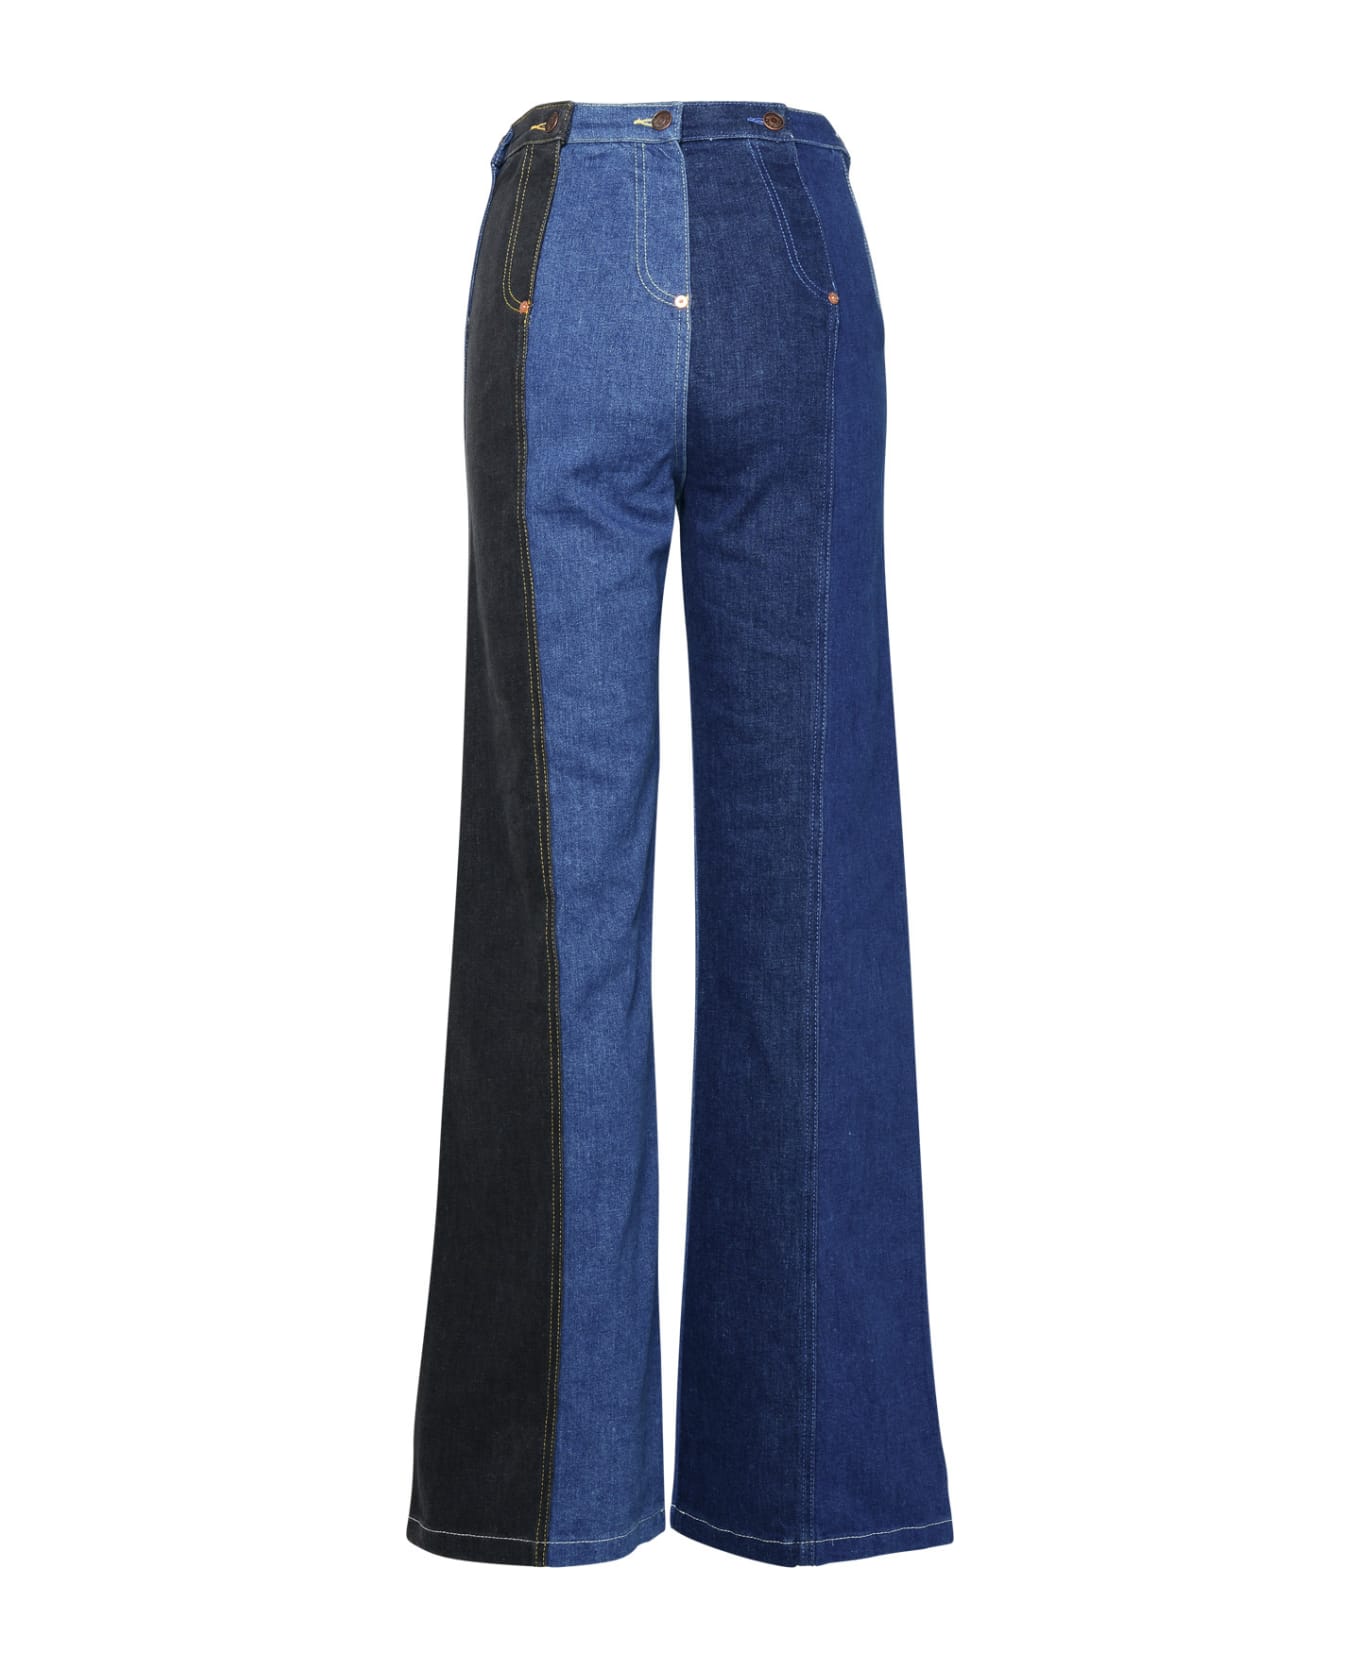 M05CH1N0 Jeans Blue Cotton Jeans - Blue